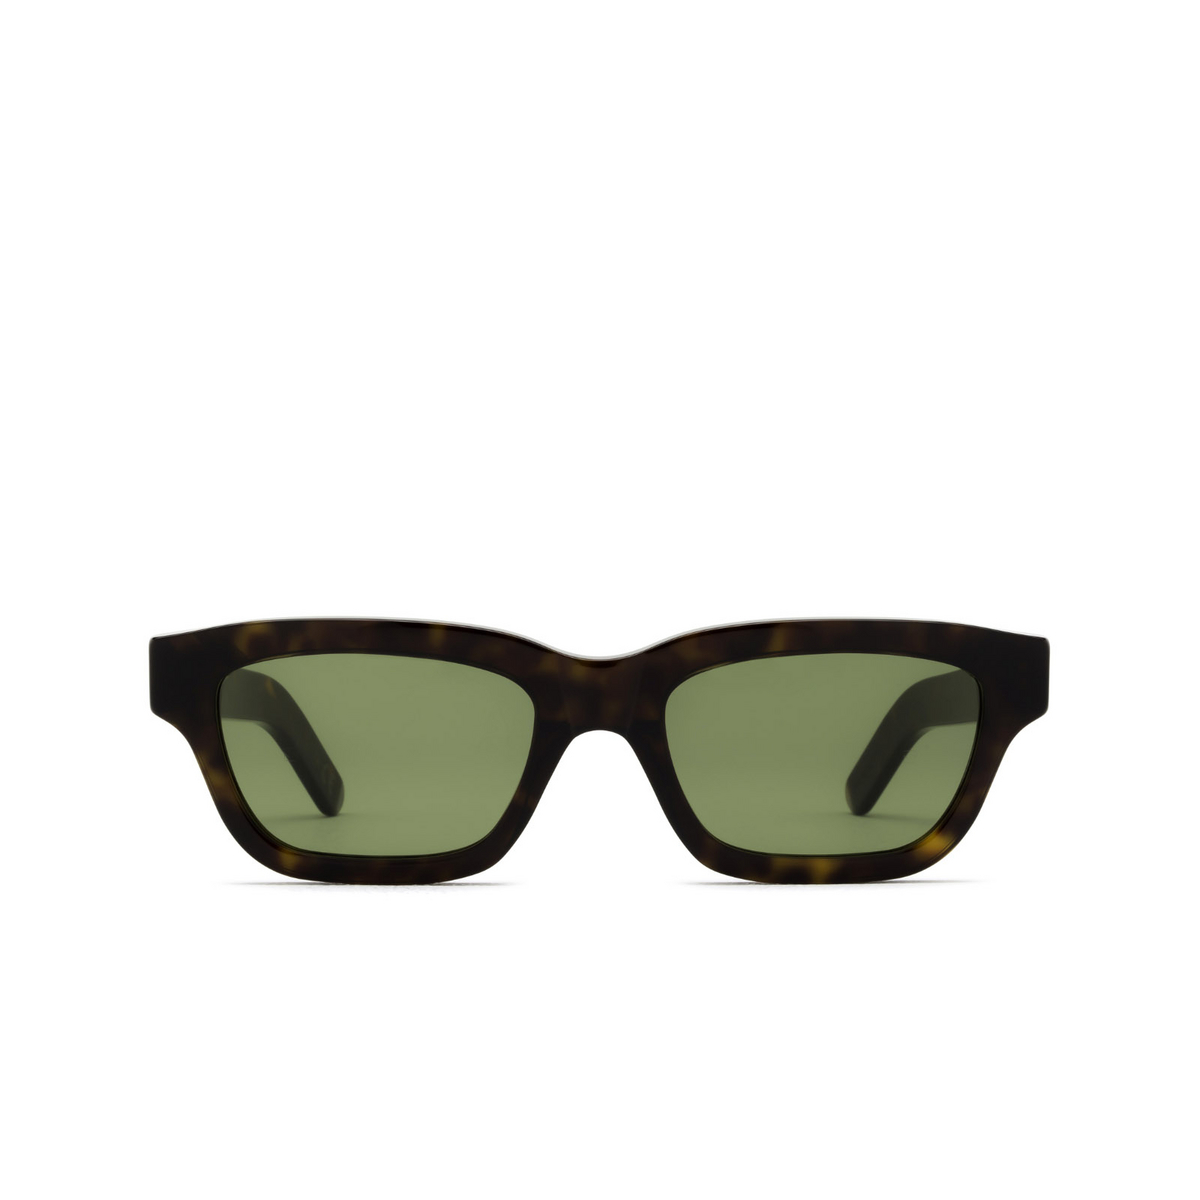 Retrosuperfuture® Rectangle Sunglasses: Milano color 3627 F4G - front view.